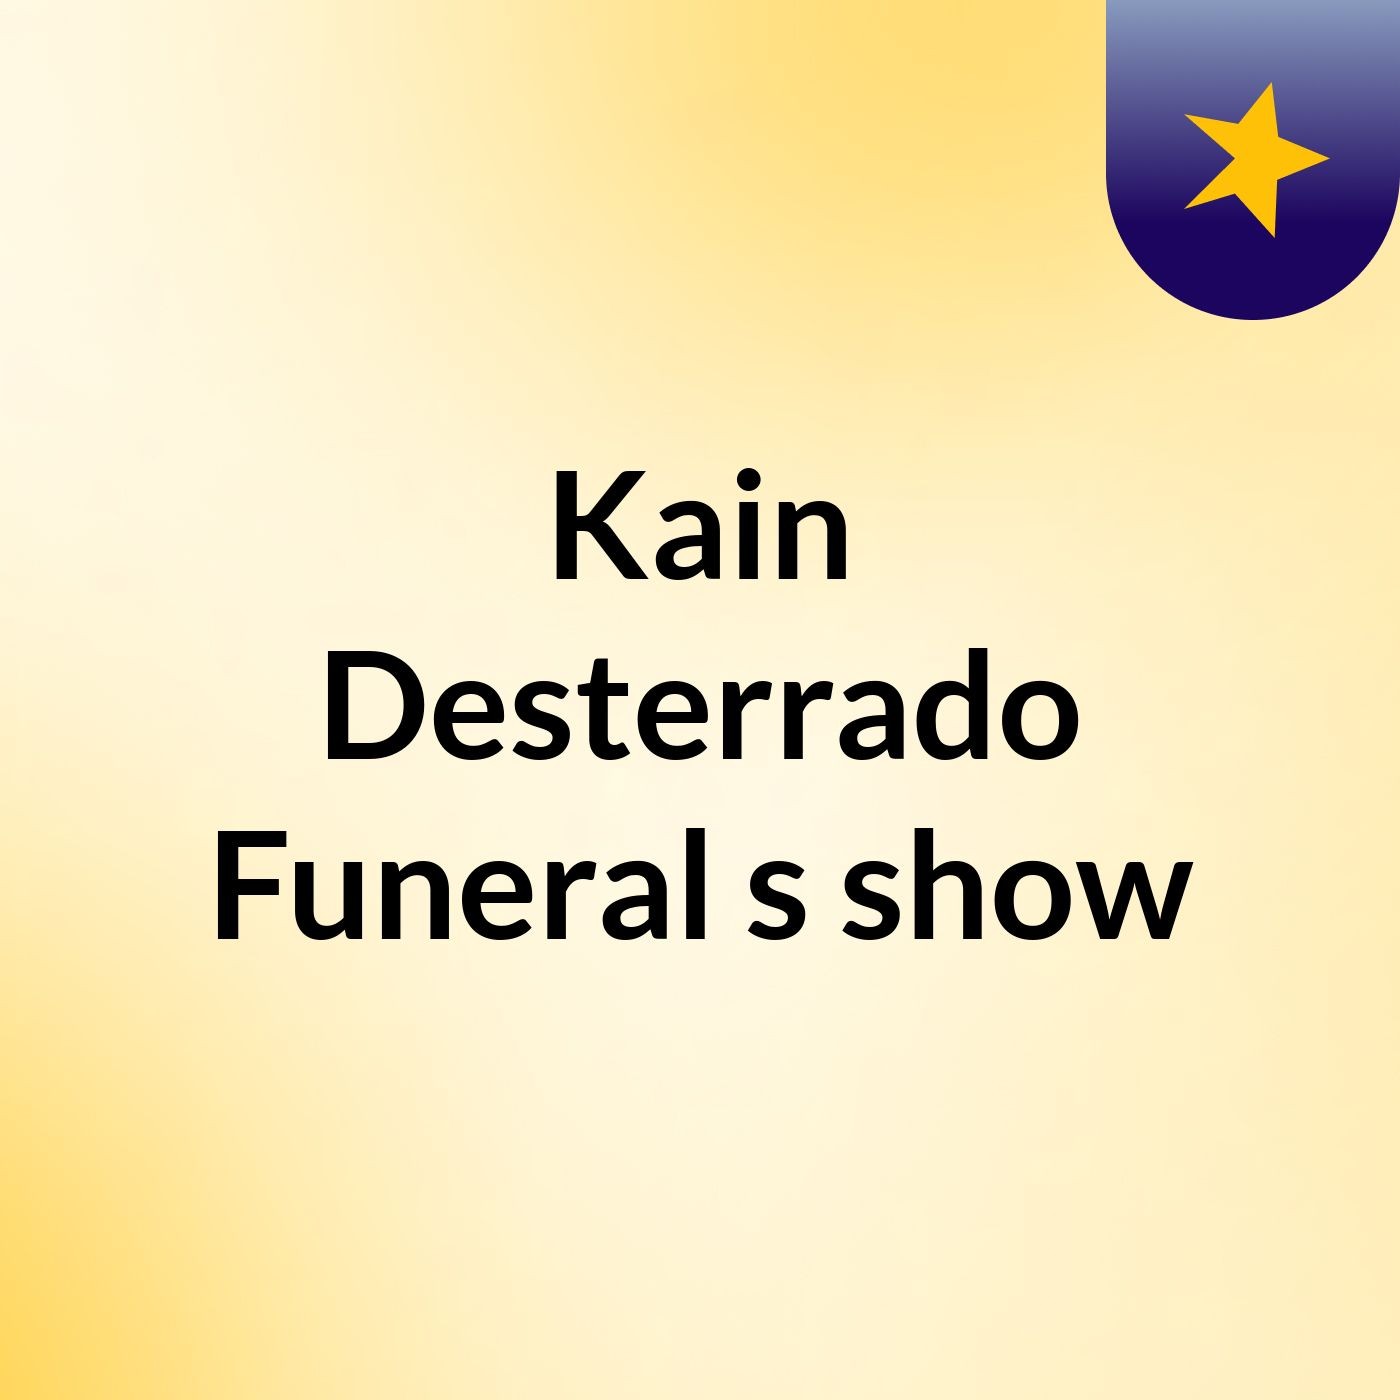 Kain Desterrado Funeral's show